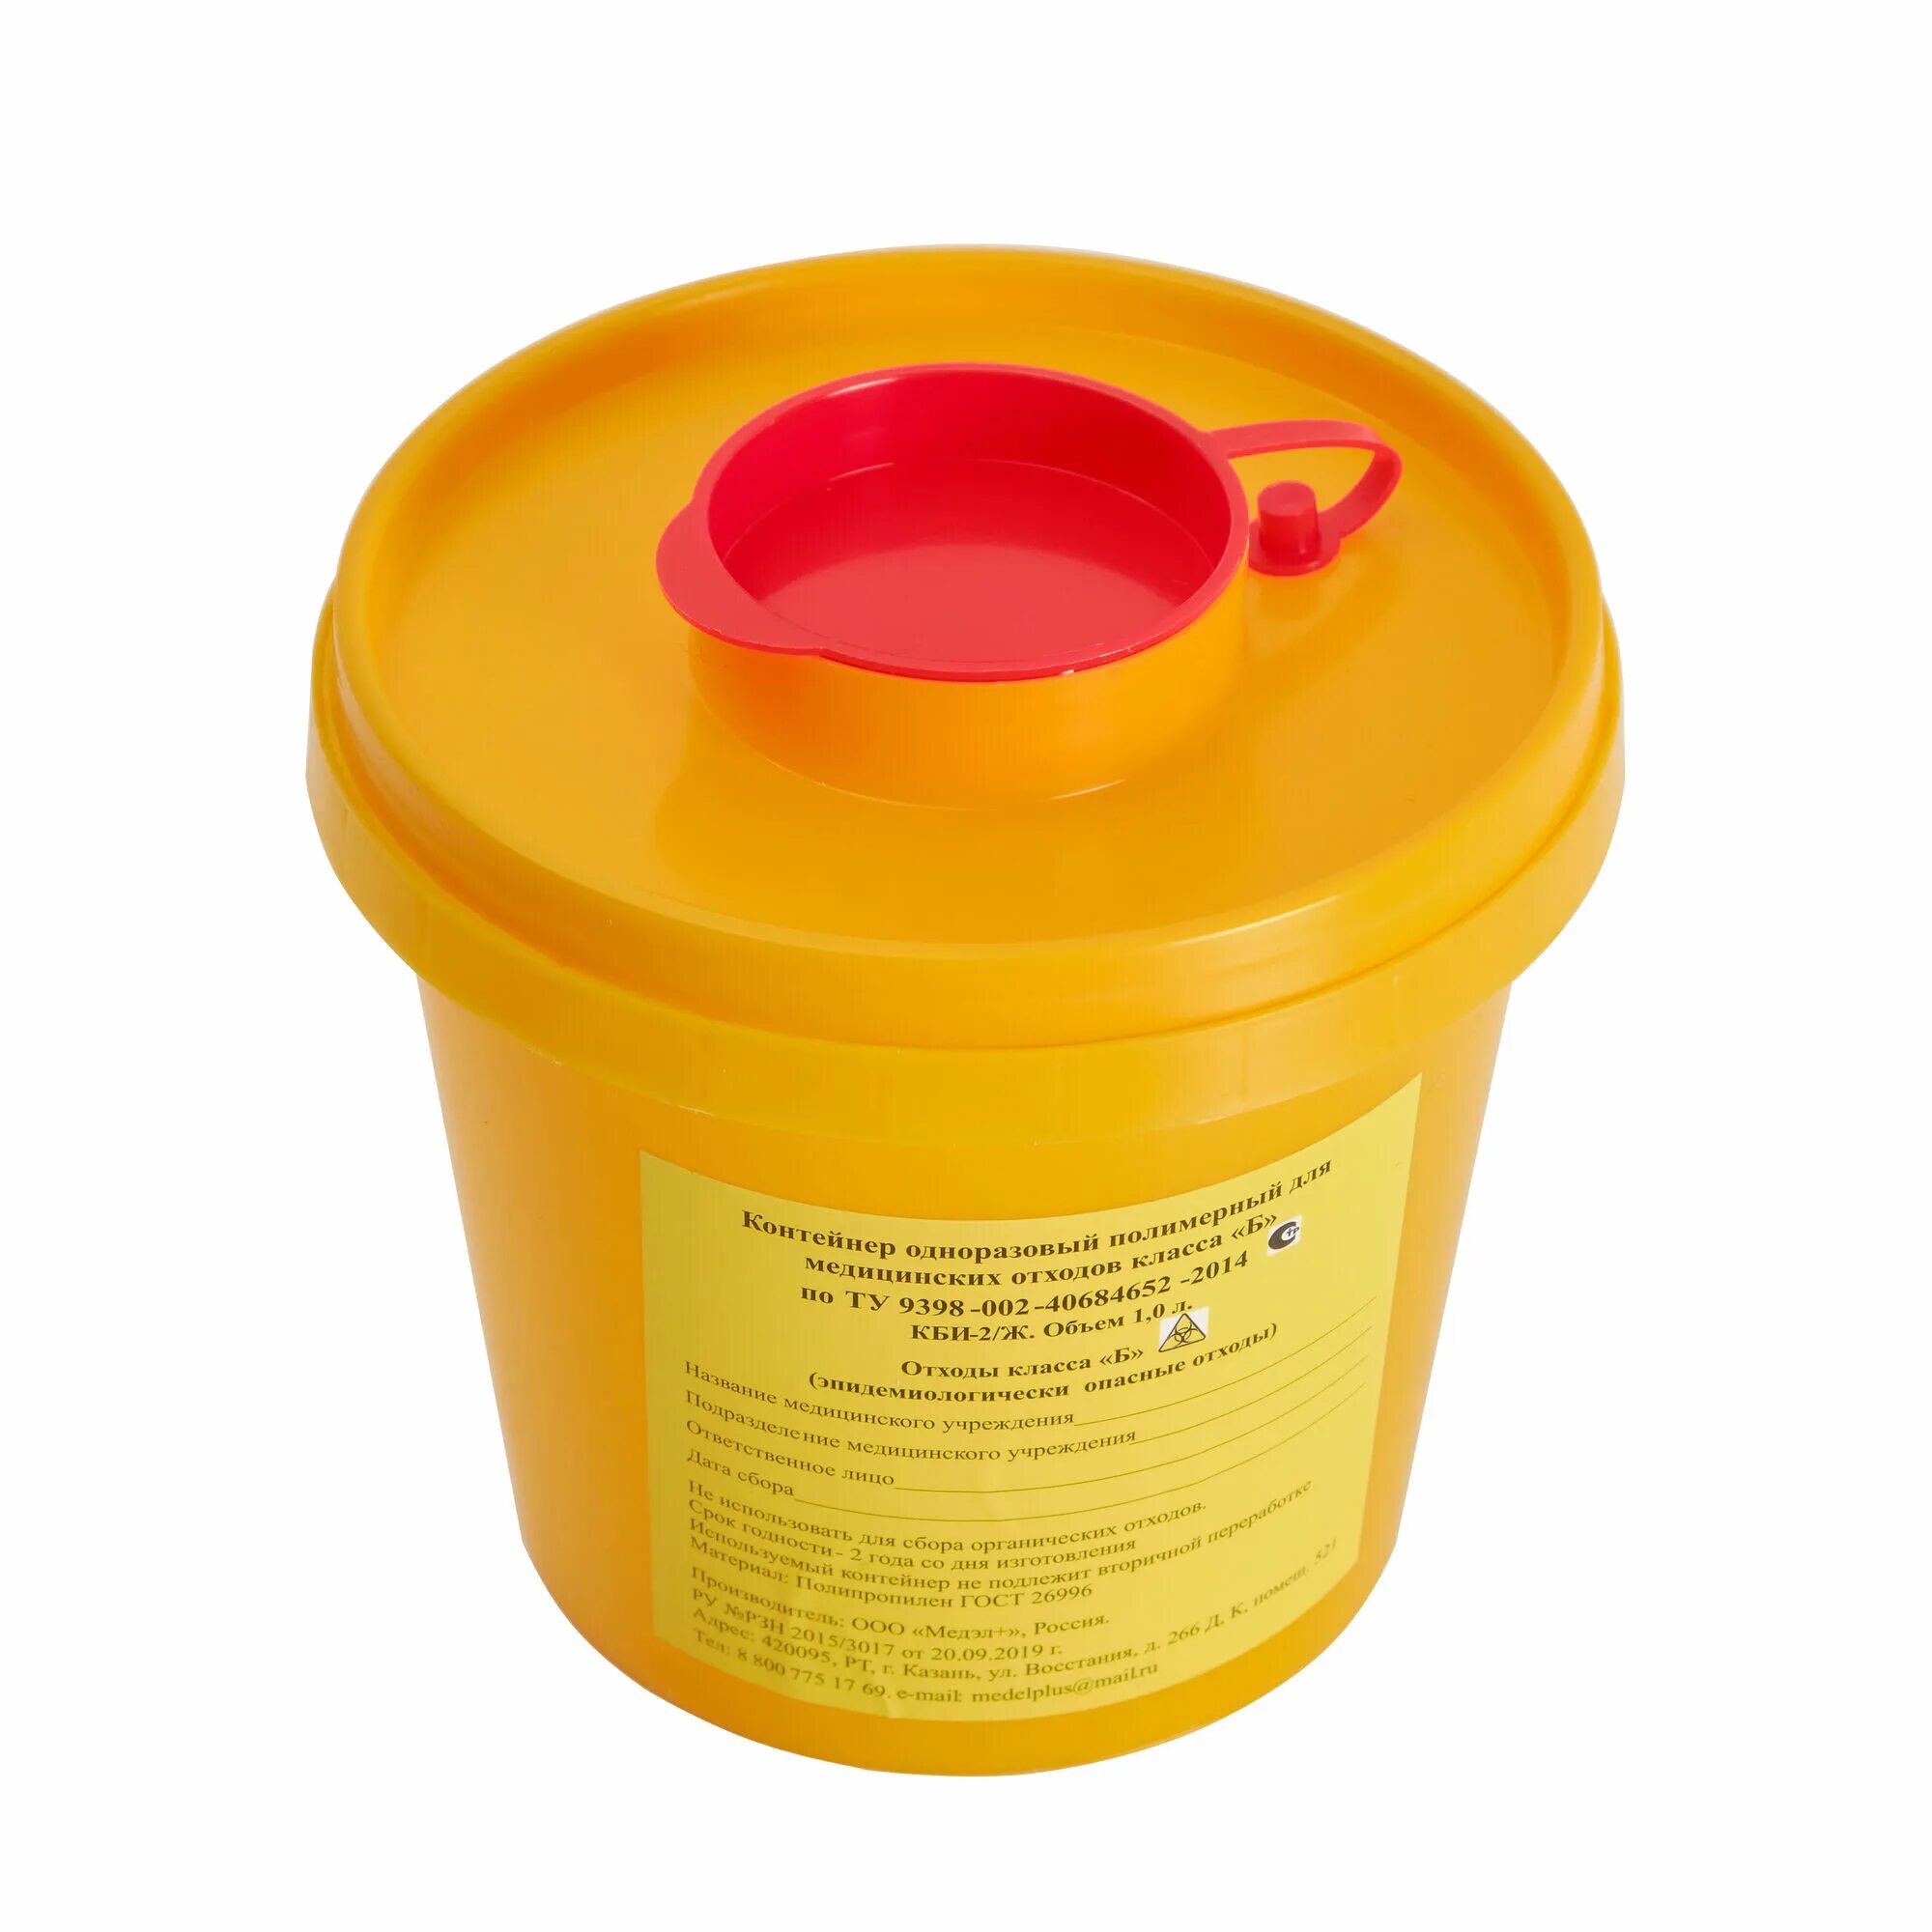 Емкость-контейнер для медицинских отходов/2018 (4 пусковой), шт. Емкость-контейнер для сбора игл 0.5л кл.б ЕЛАТ. Емкость-контейнер для сбора игл 1,0л кл.б (желтый) "респект". Контейнер для утилизации игл 1.1 л.